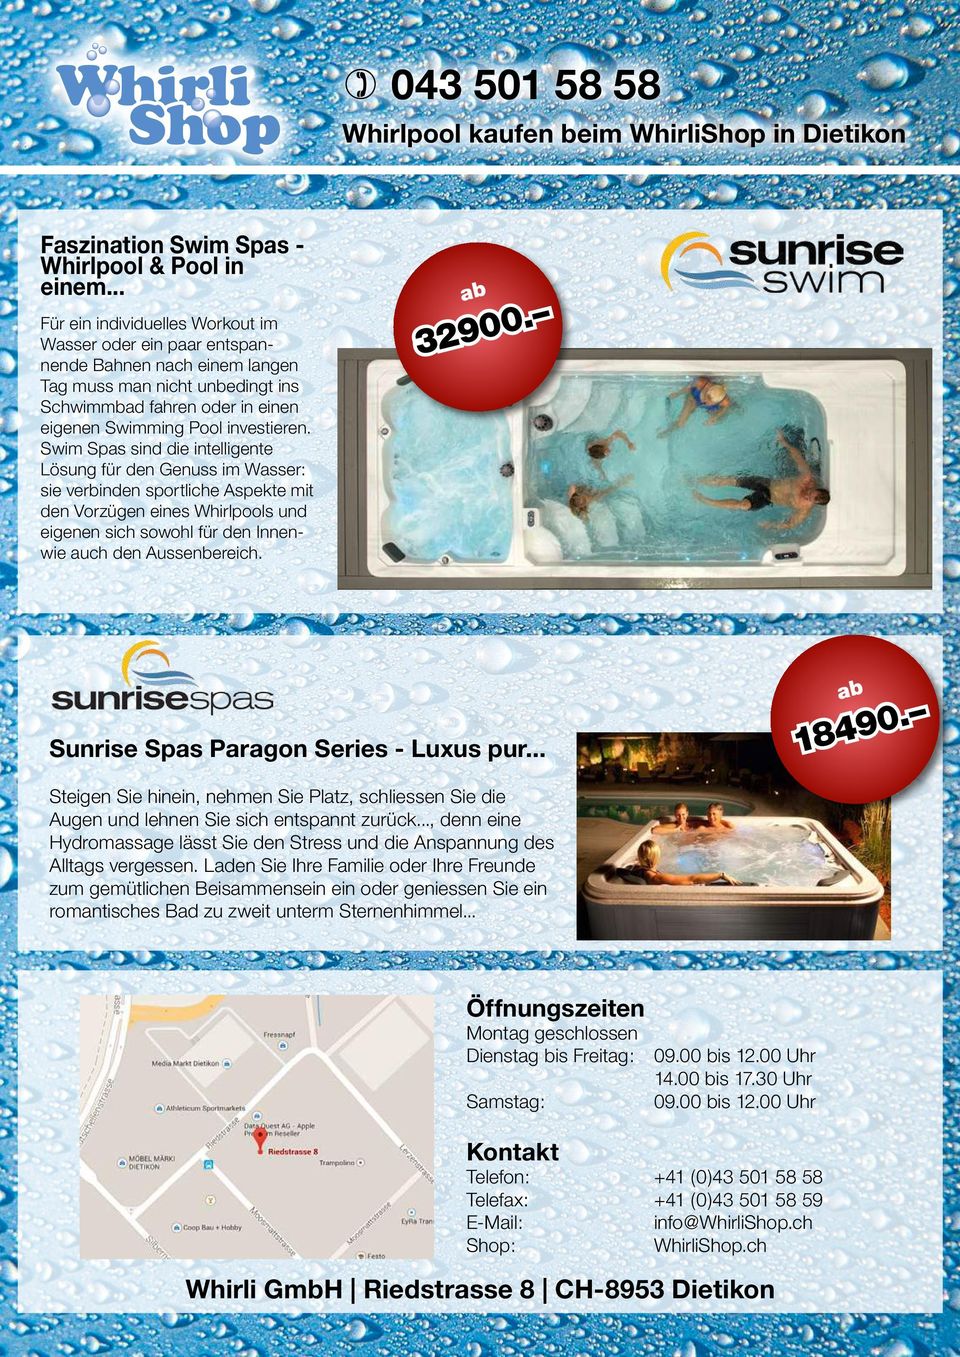 Swim Spas sind die intelligente Lösung für den Genuss im Wasser: sie verbinden sportliche Aspekte mit den Vorzügen eines Whirlpools und eigenen sich sowohl für den Innenwie auch den Aussenbereich.